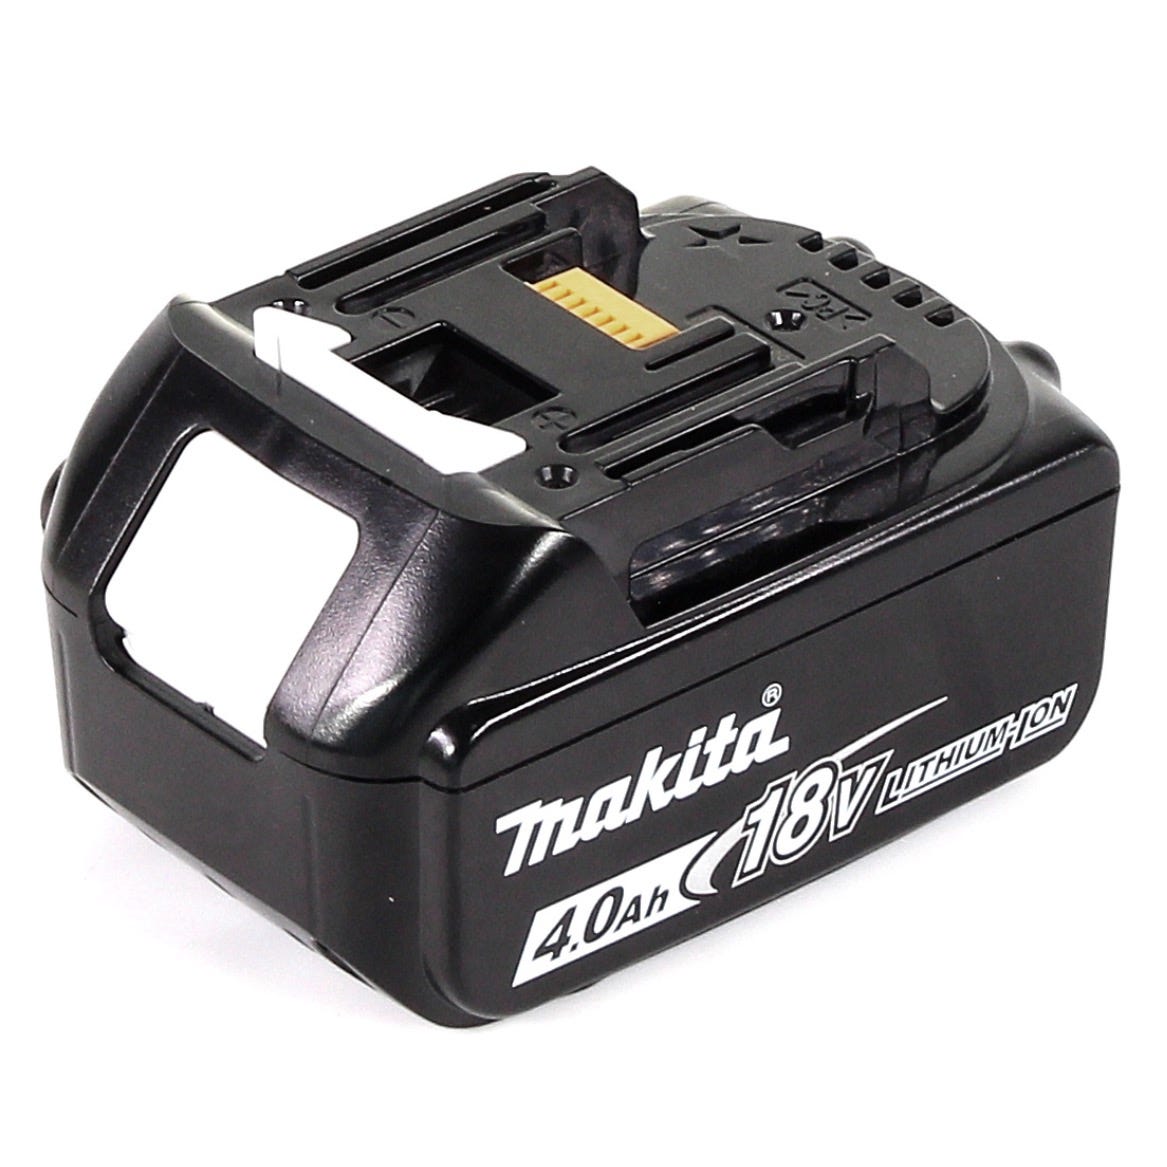 Makita DDF 459 M1J 18 V Li-Ion Perceuse visseuse sans fil + Coffret Makpac + 1 x Batterie 4,0 Ah - sans Chargeur 3